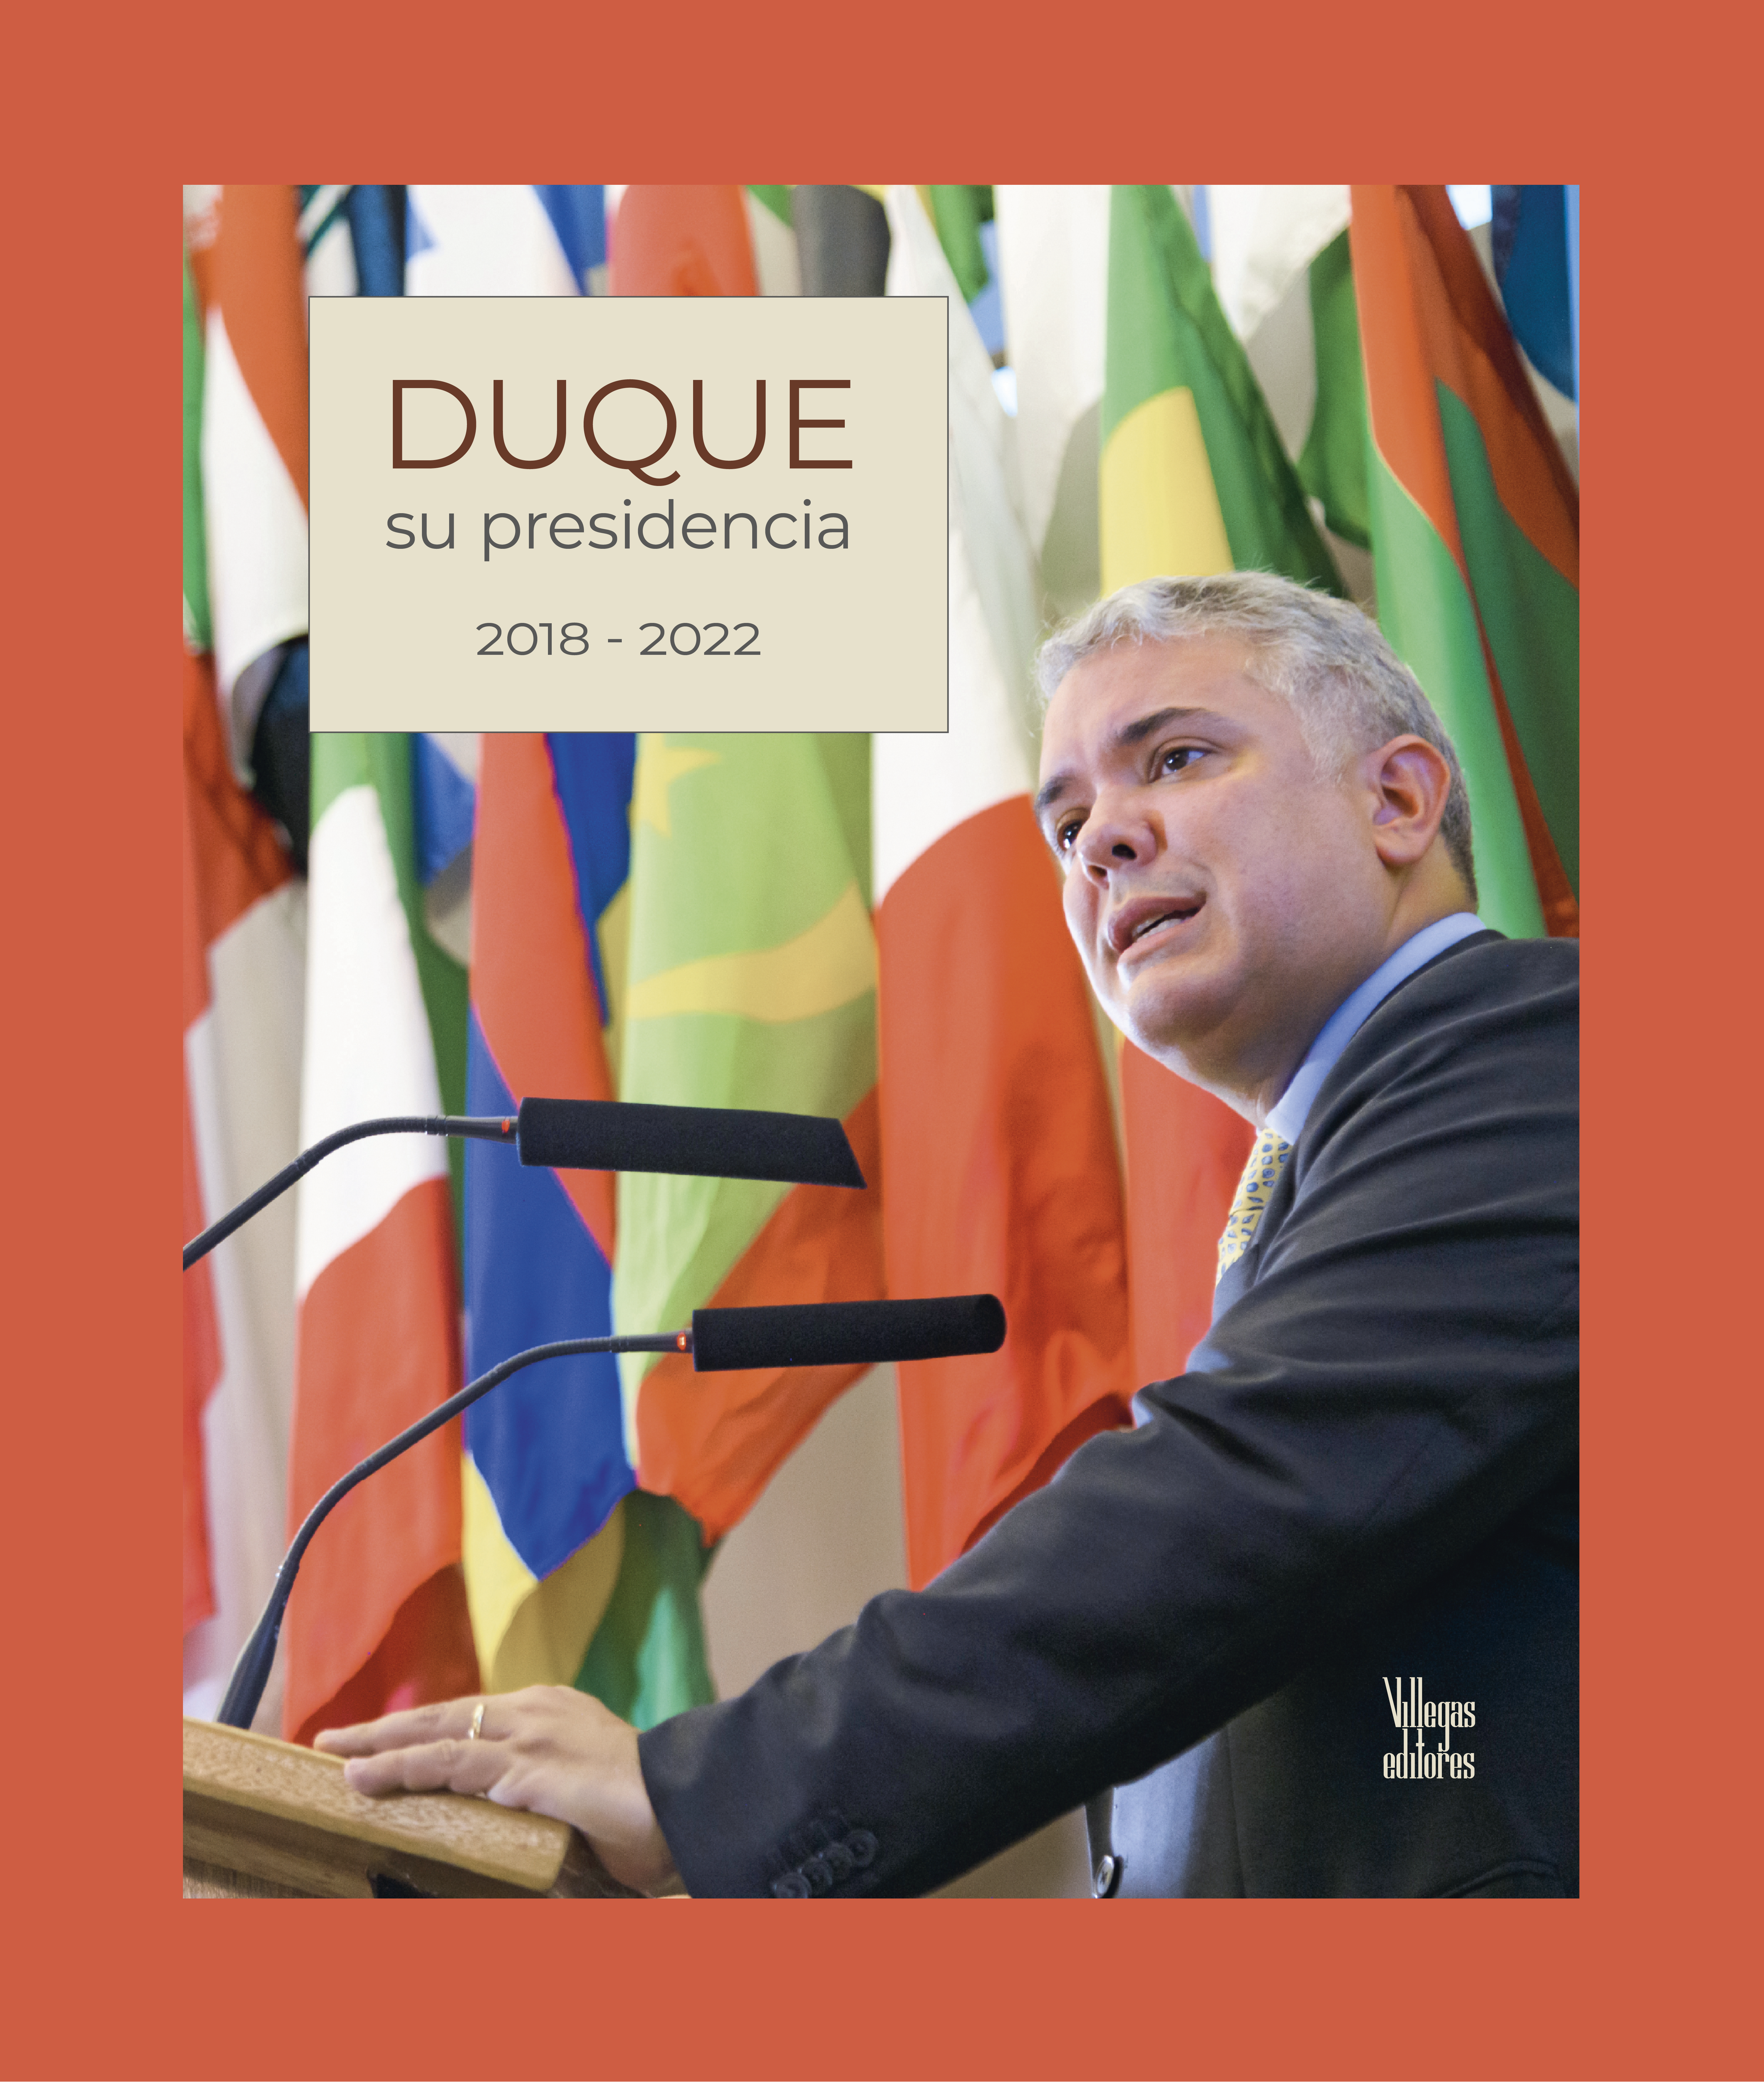 Portada del libro "Duque. Su presidencia". (Cortesía: Villegas Editores).